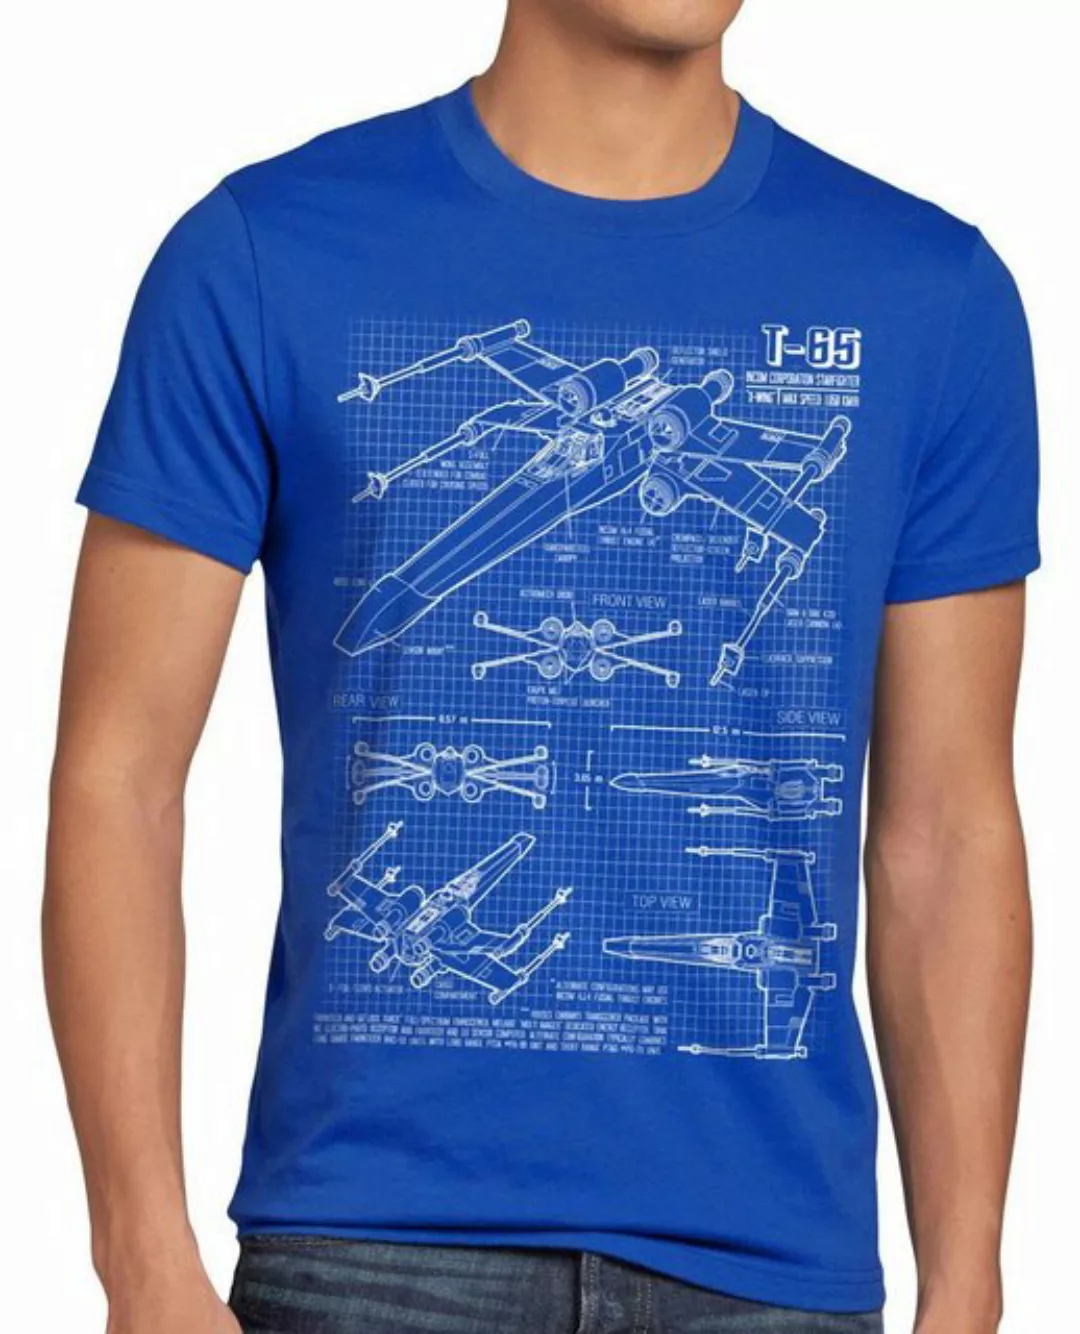 style3 Print-Shirt T-65 Jäger Herren T-Shirt wing star darth wars rebellion günstig online kaufen